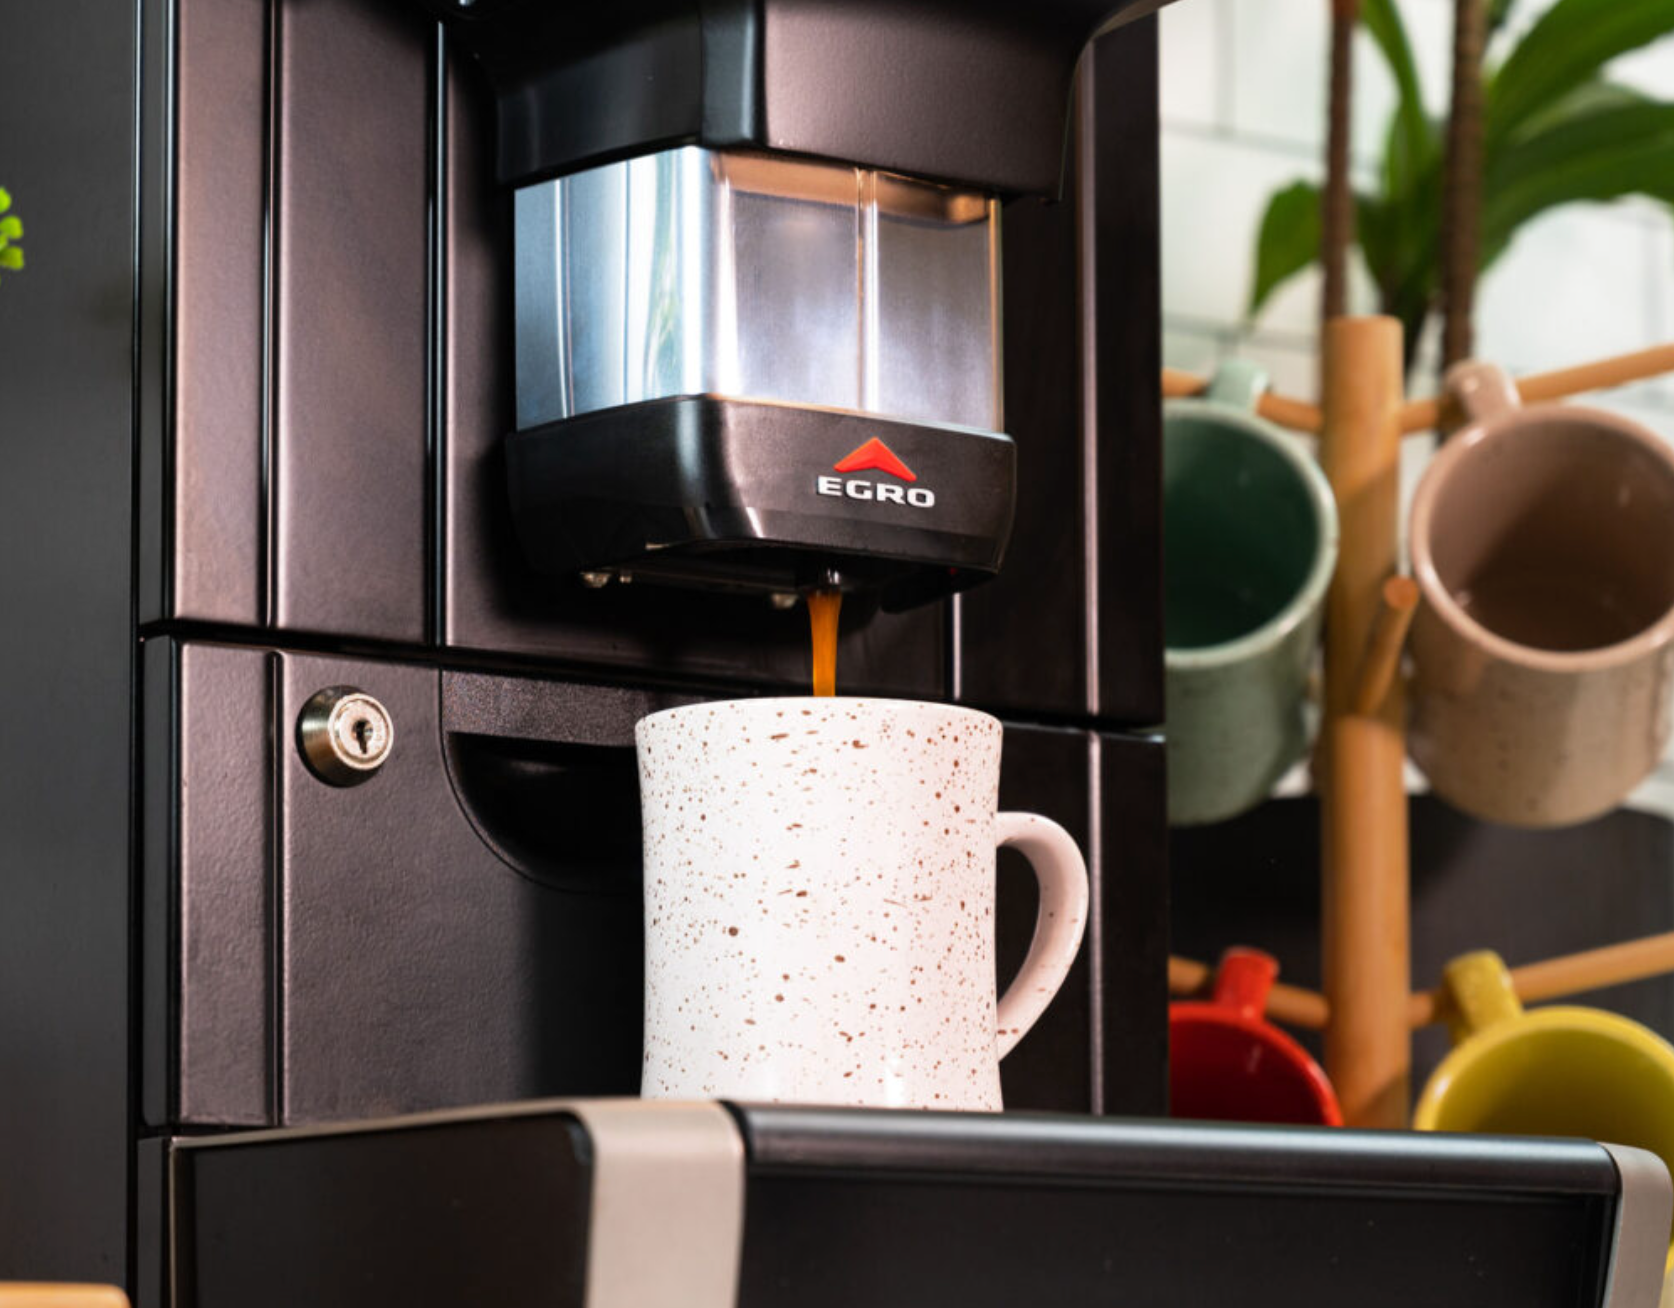 Rancilio Egro Touch Coffee Super Automatic Espresso Machine - 2 Hopper Configuration